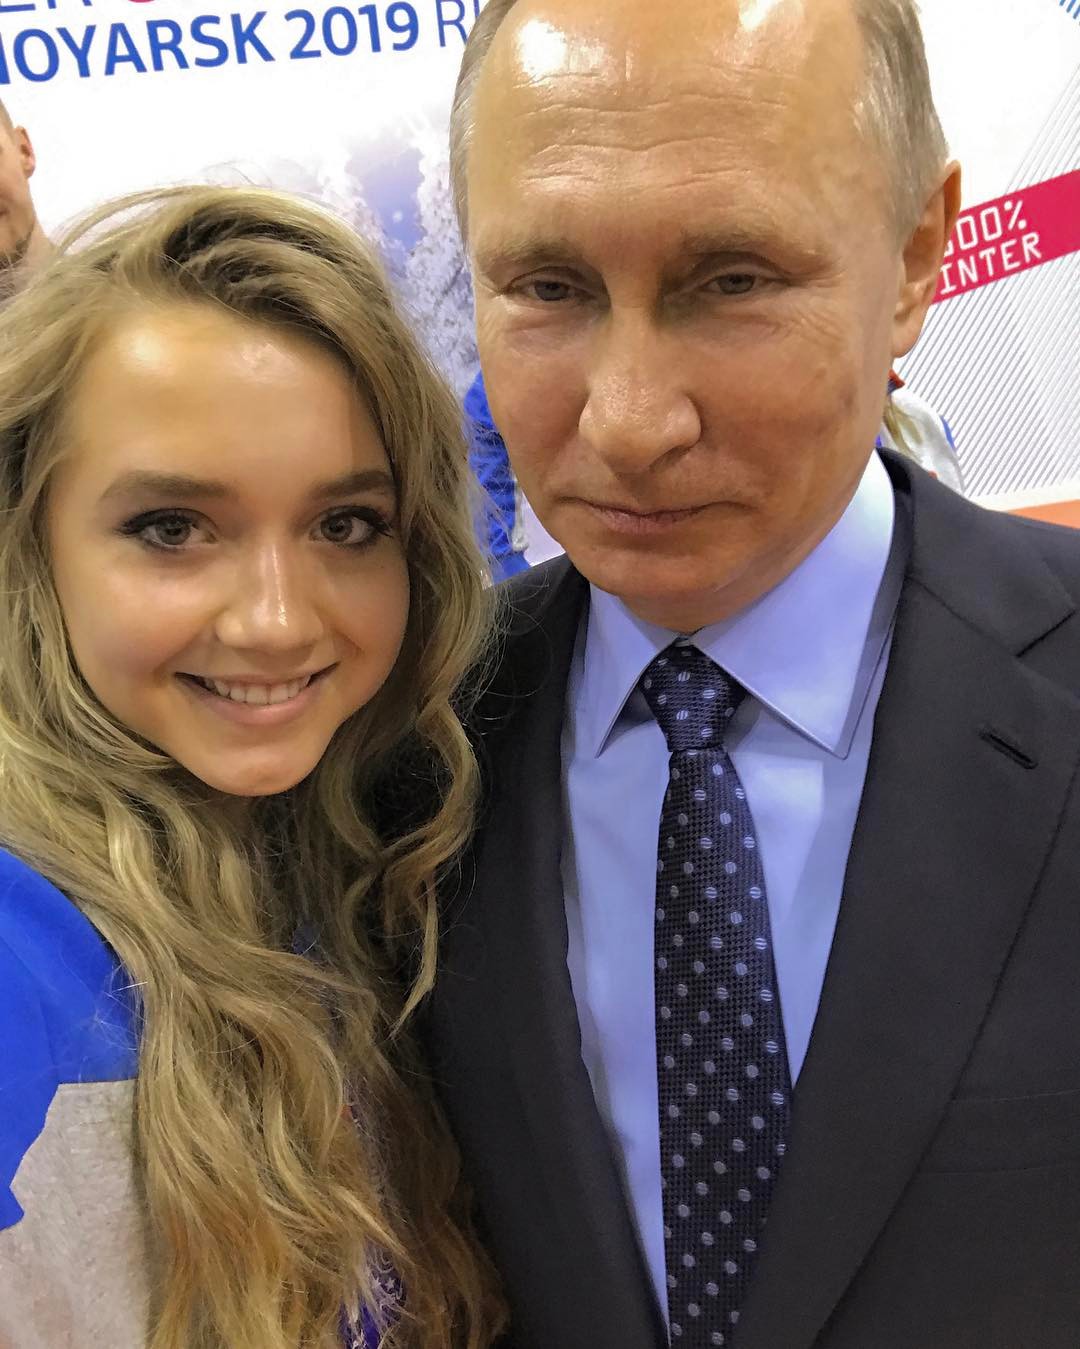 Елена Радионова представила миру свой фотошедевр в Instagram